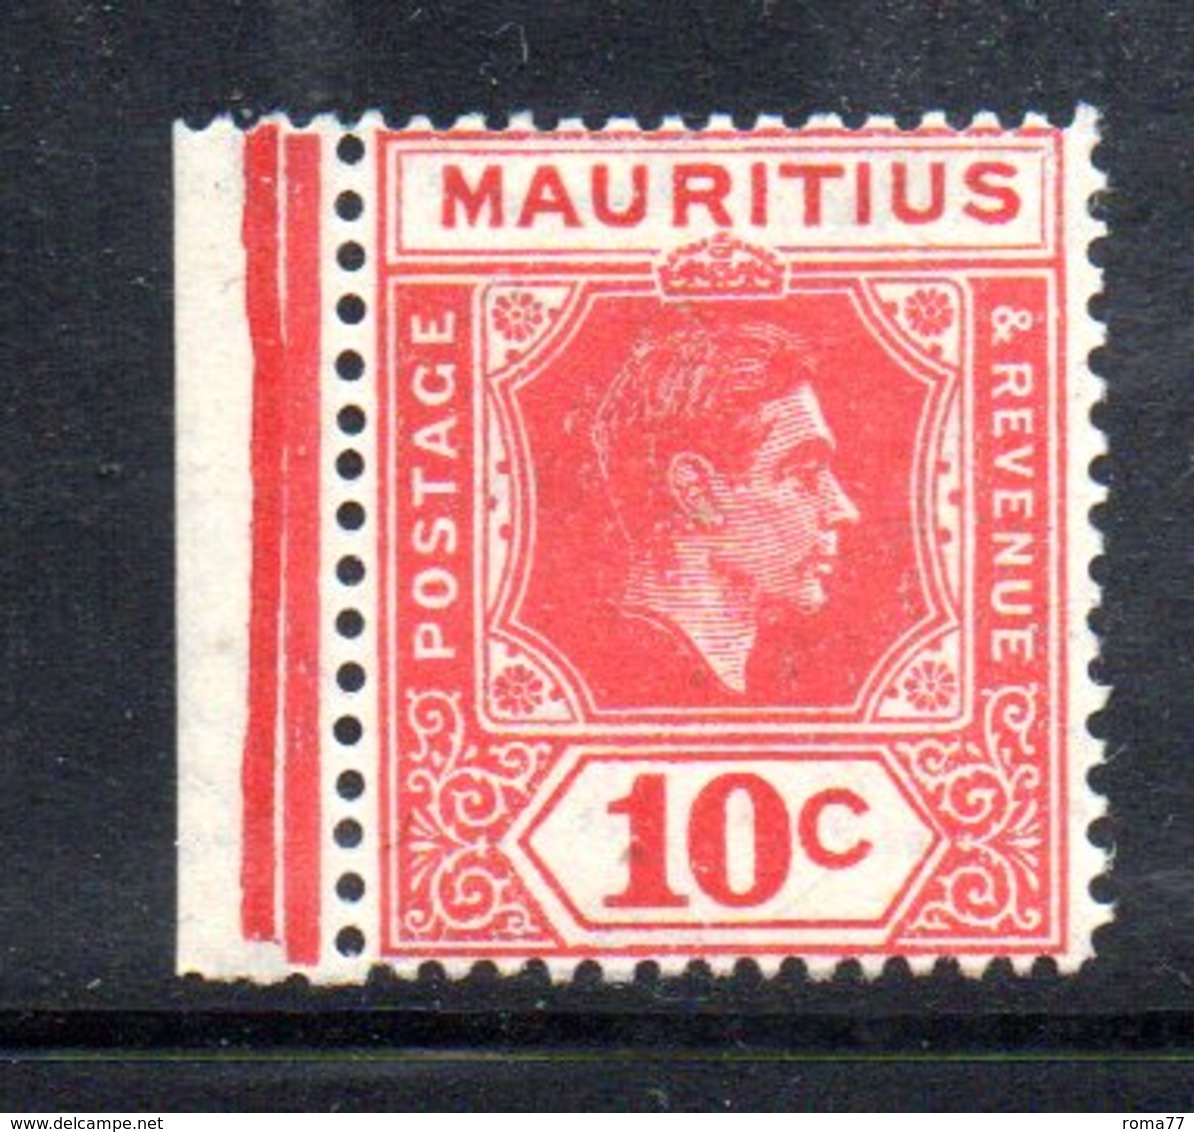 PB90 - MAURITIUS , Giorgio VI 1938 : Yvert  N. 205b (Gibbons N. 256c) Dent 15x14 *** - Mauritius (1968-...)